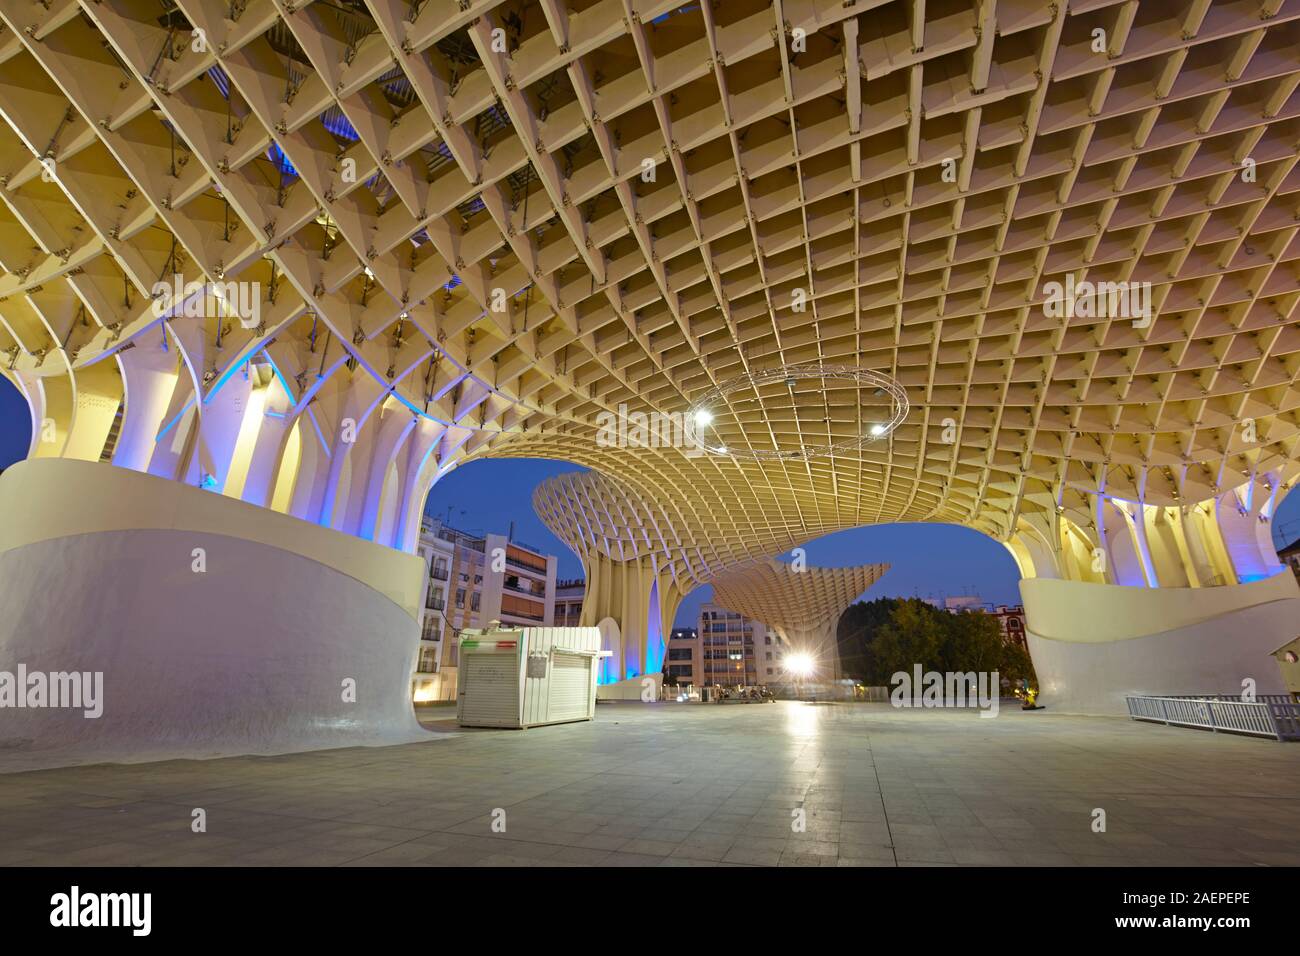 La structure de bois du Metropol Parasol à Séville, Espagne Banque D'Images